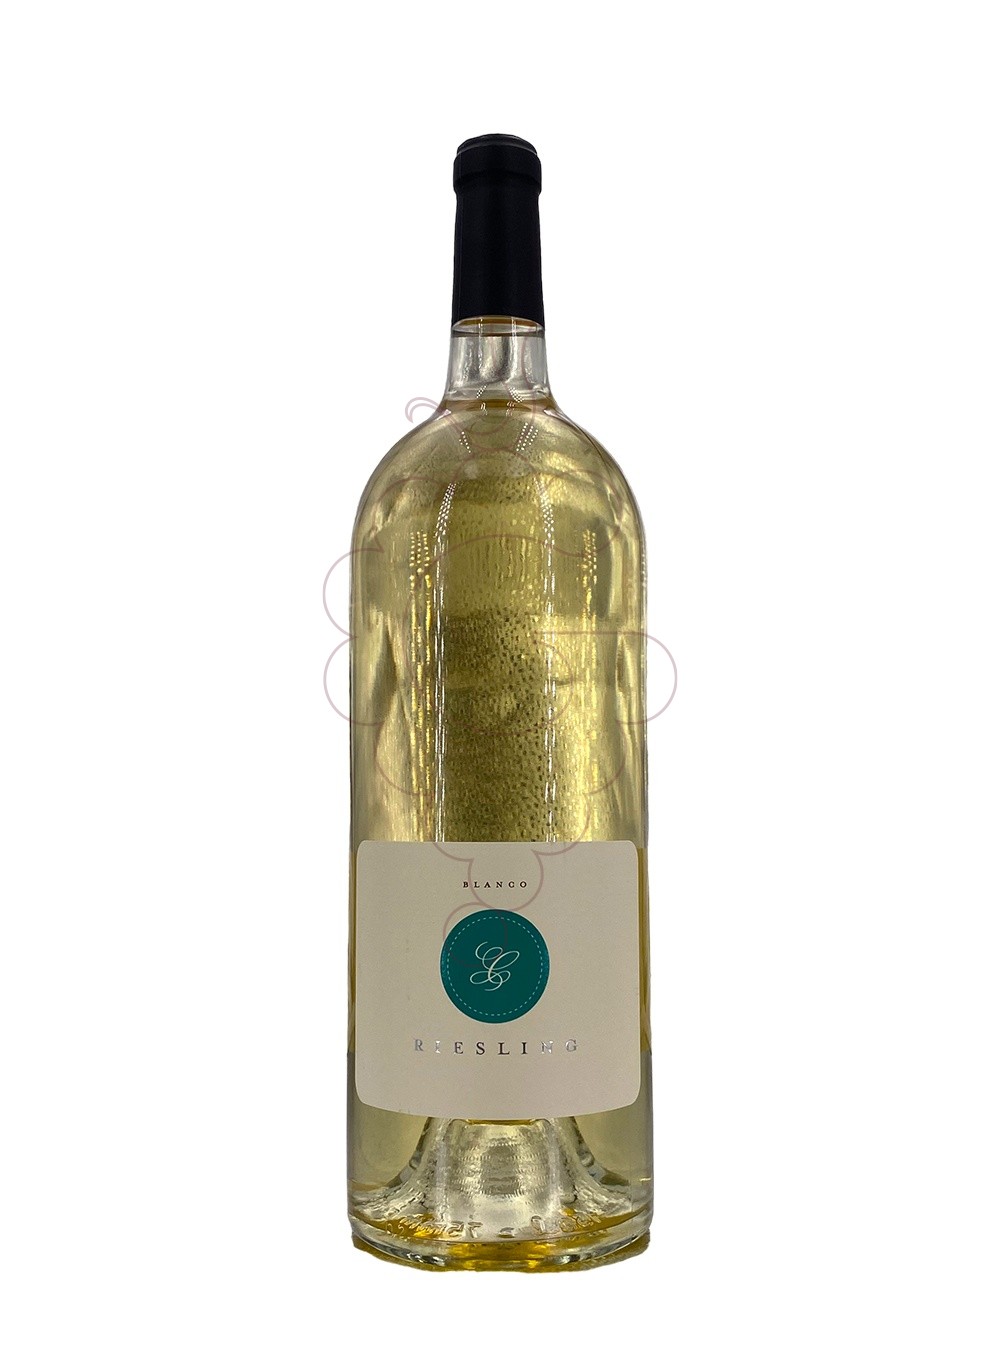 Foto Riesling blanc magnum 1,5 lt vino blanco